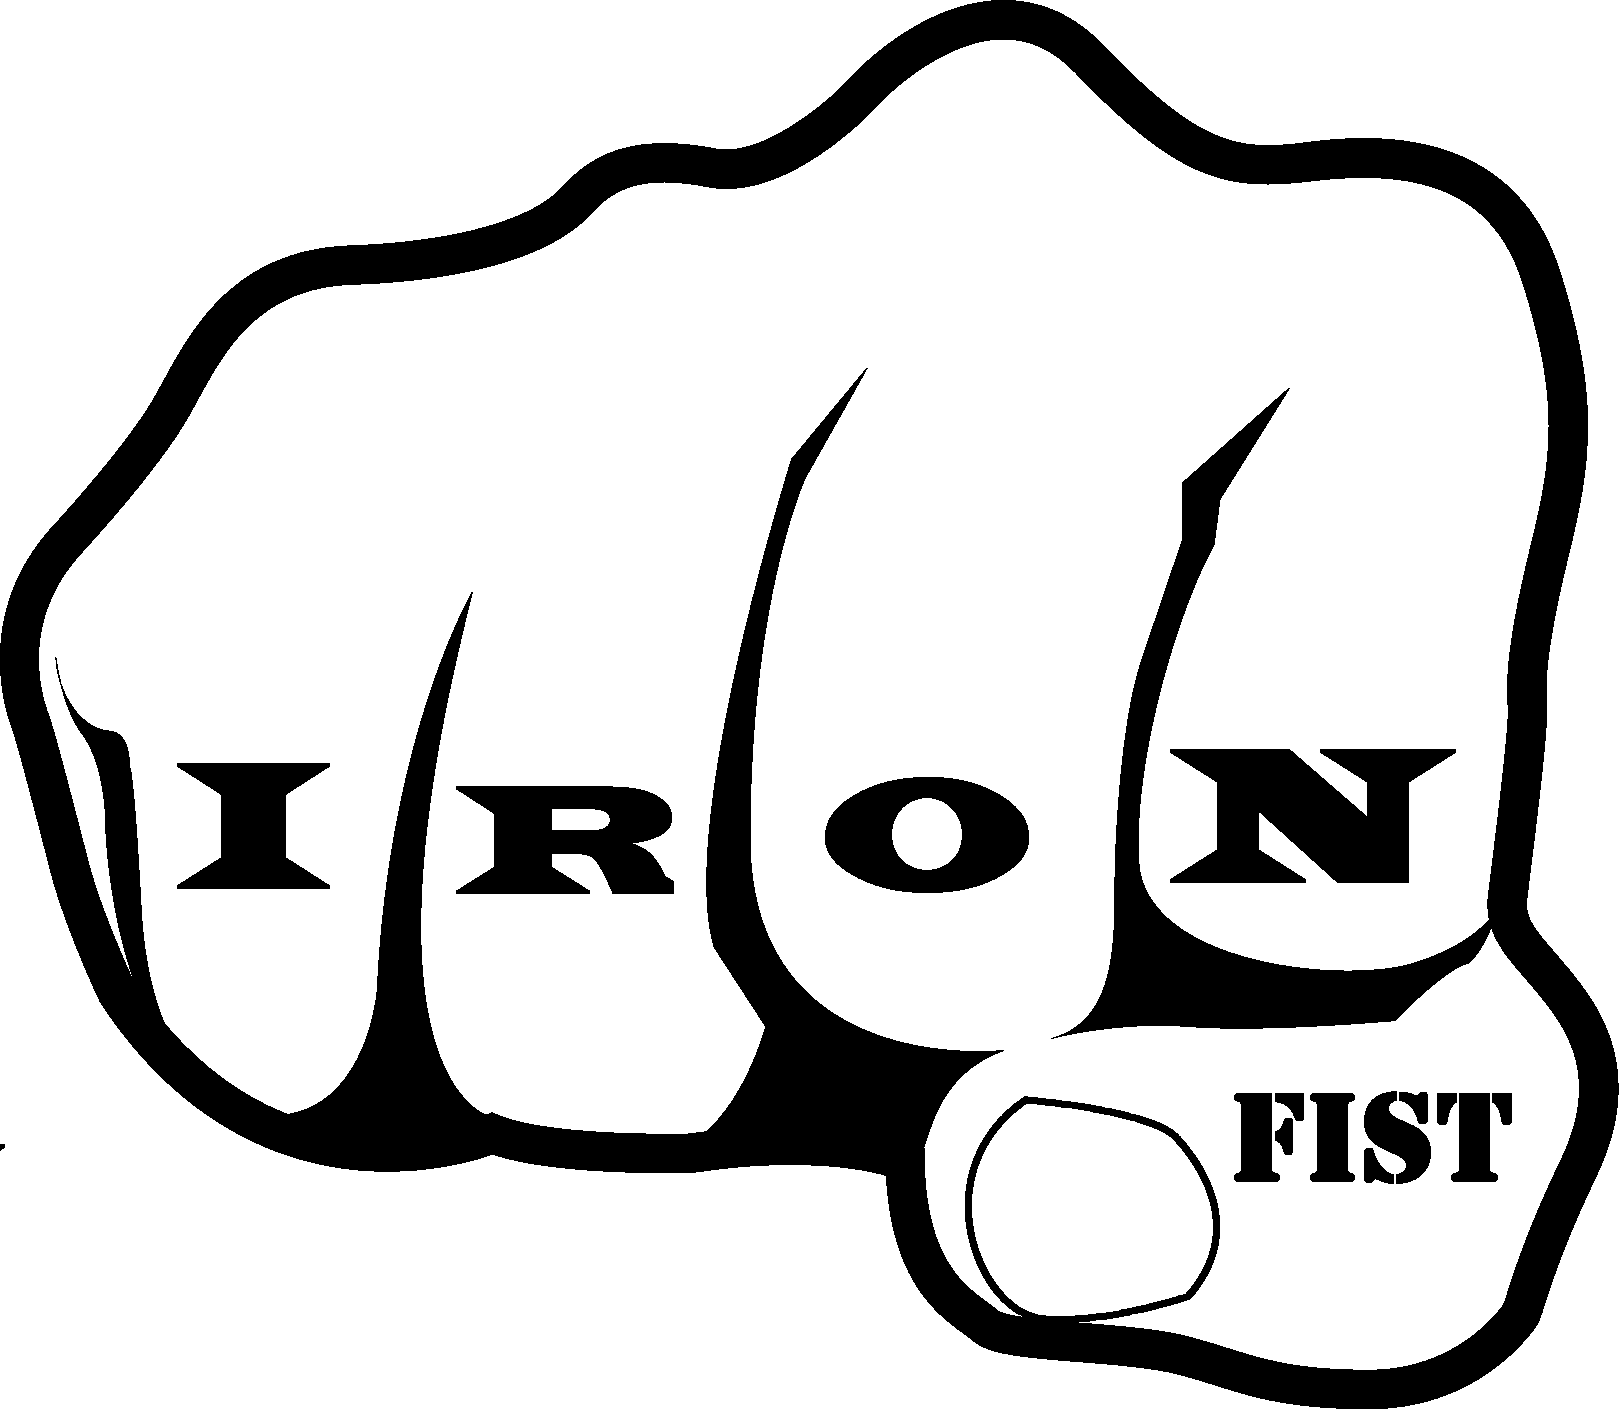 Iron Fist<<< -- Bitchassheavypunkmetaloi band